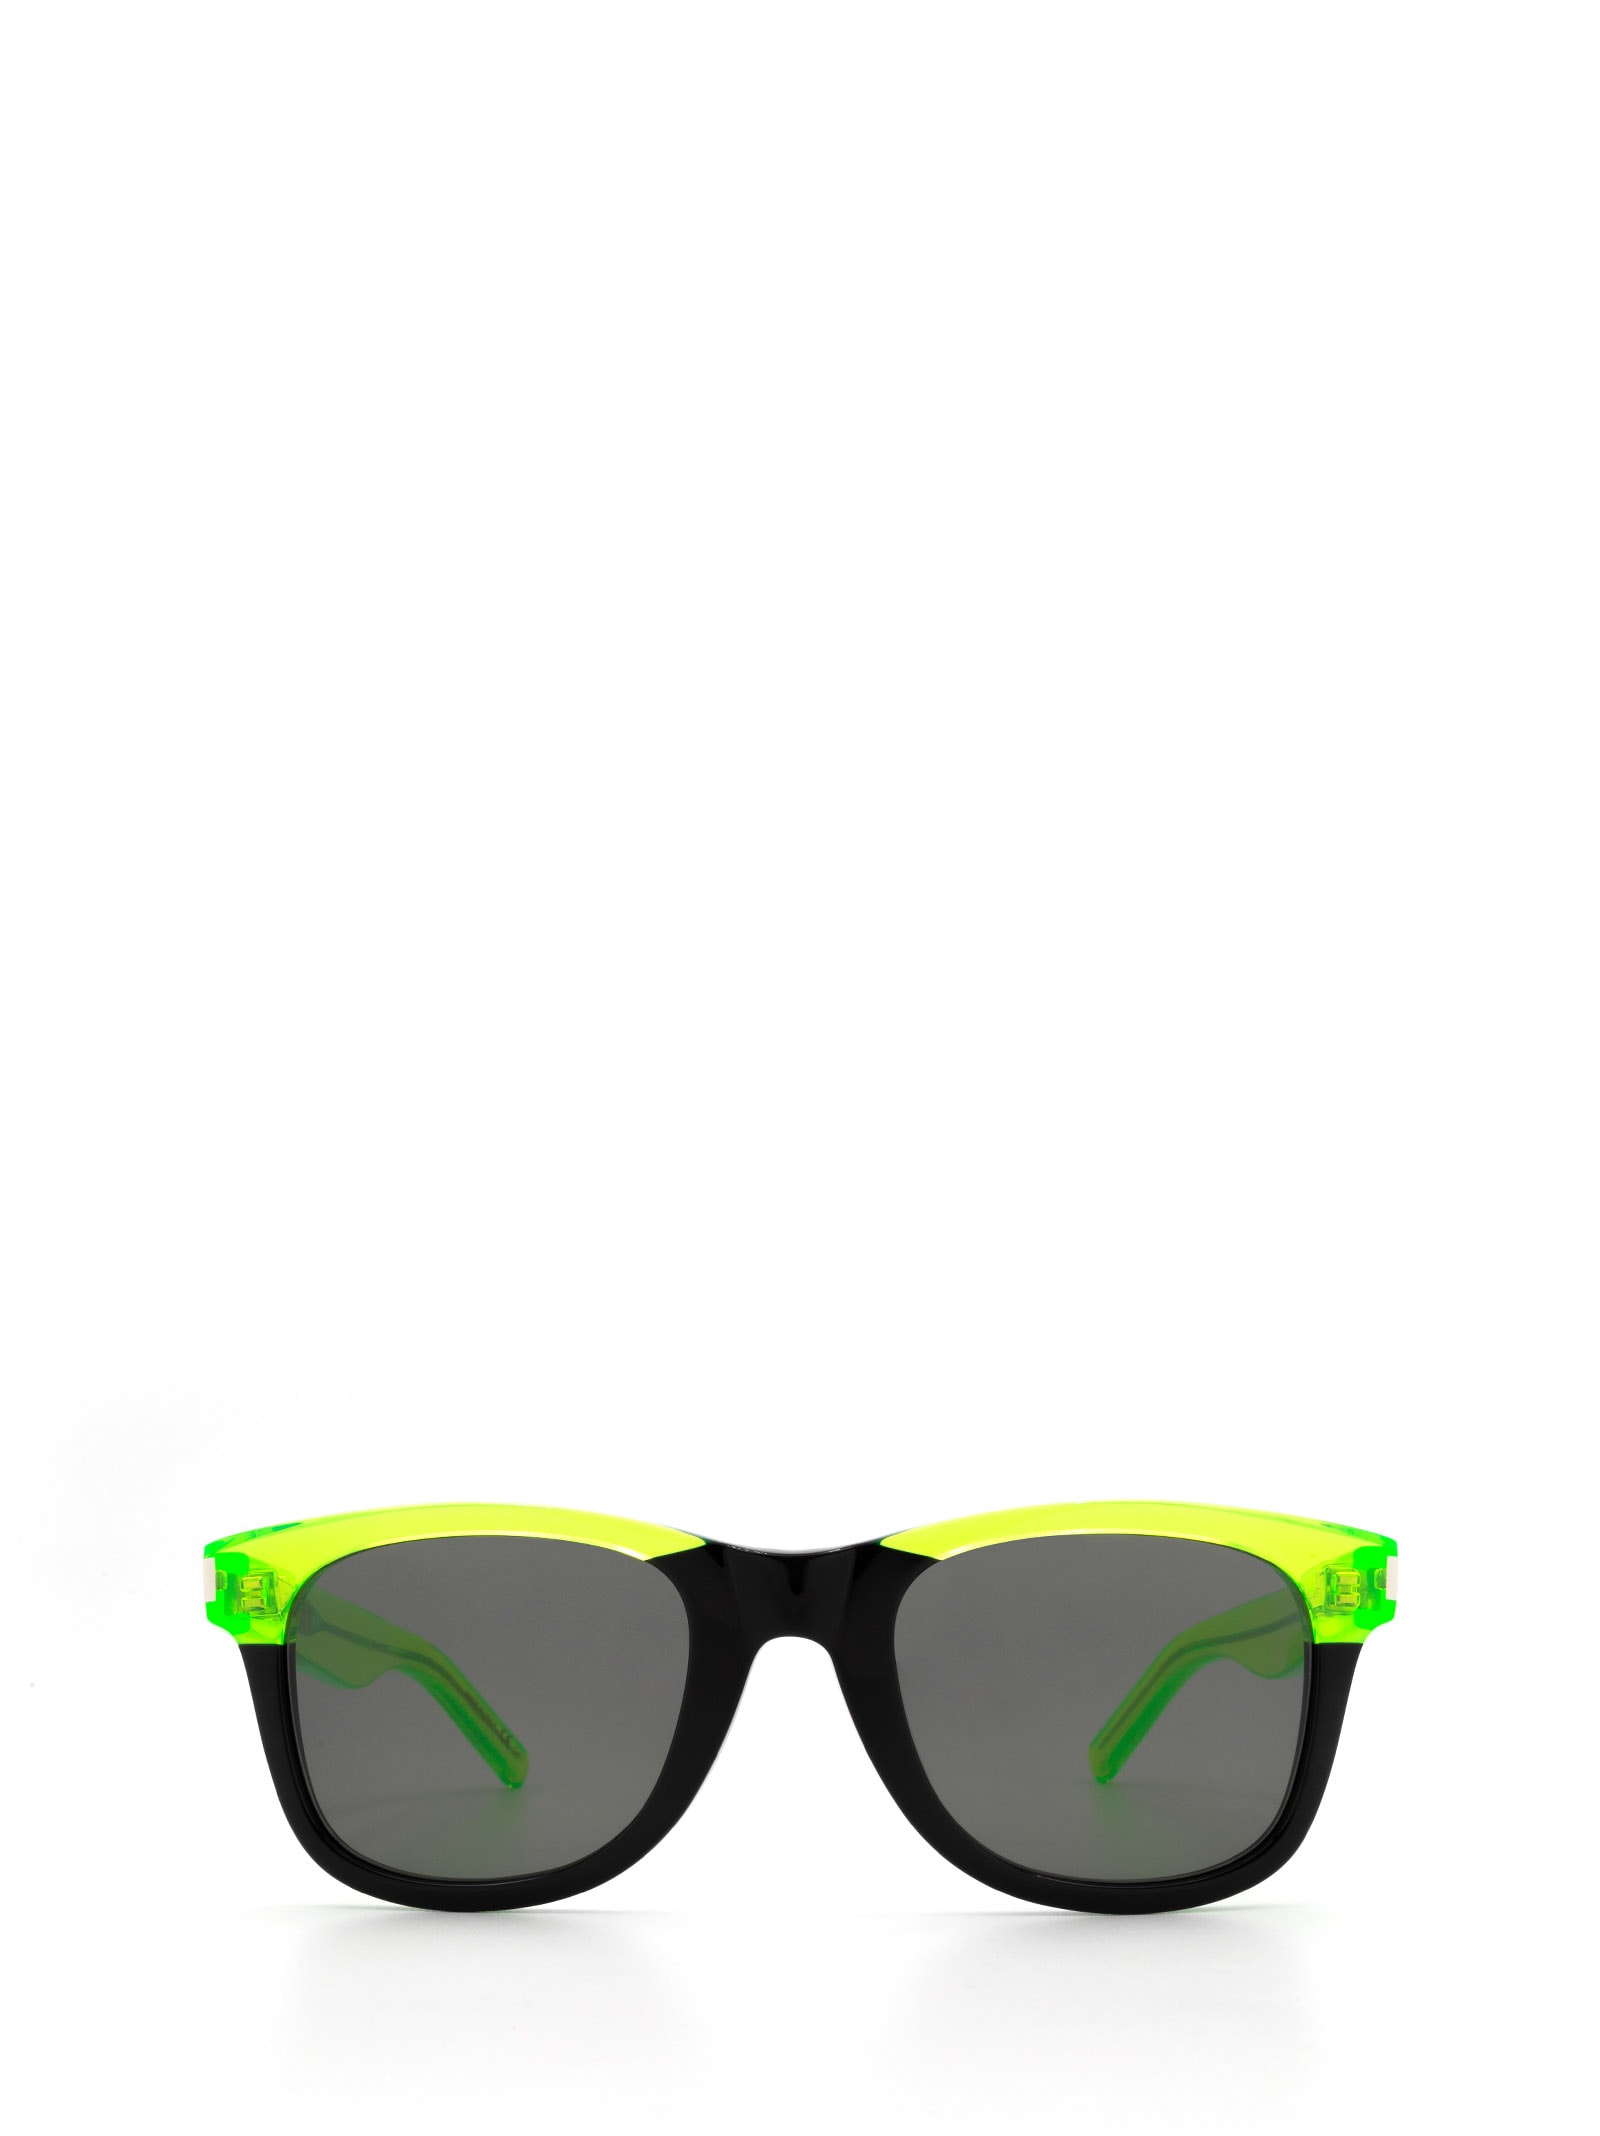 Saint Laurent Sl 51 Green Sunglasses